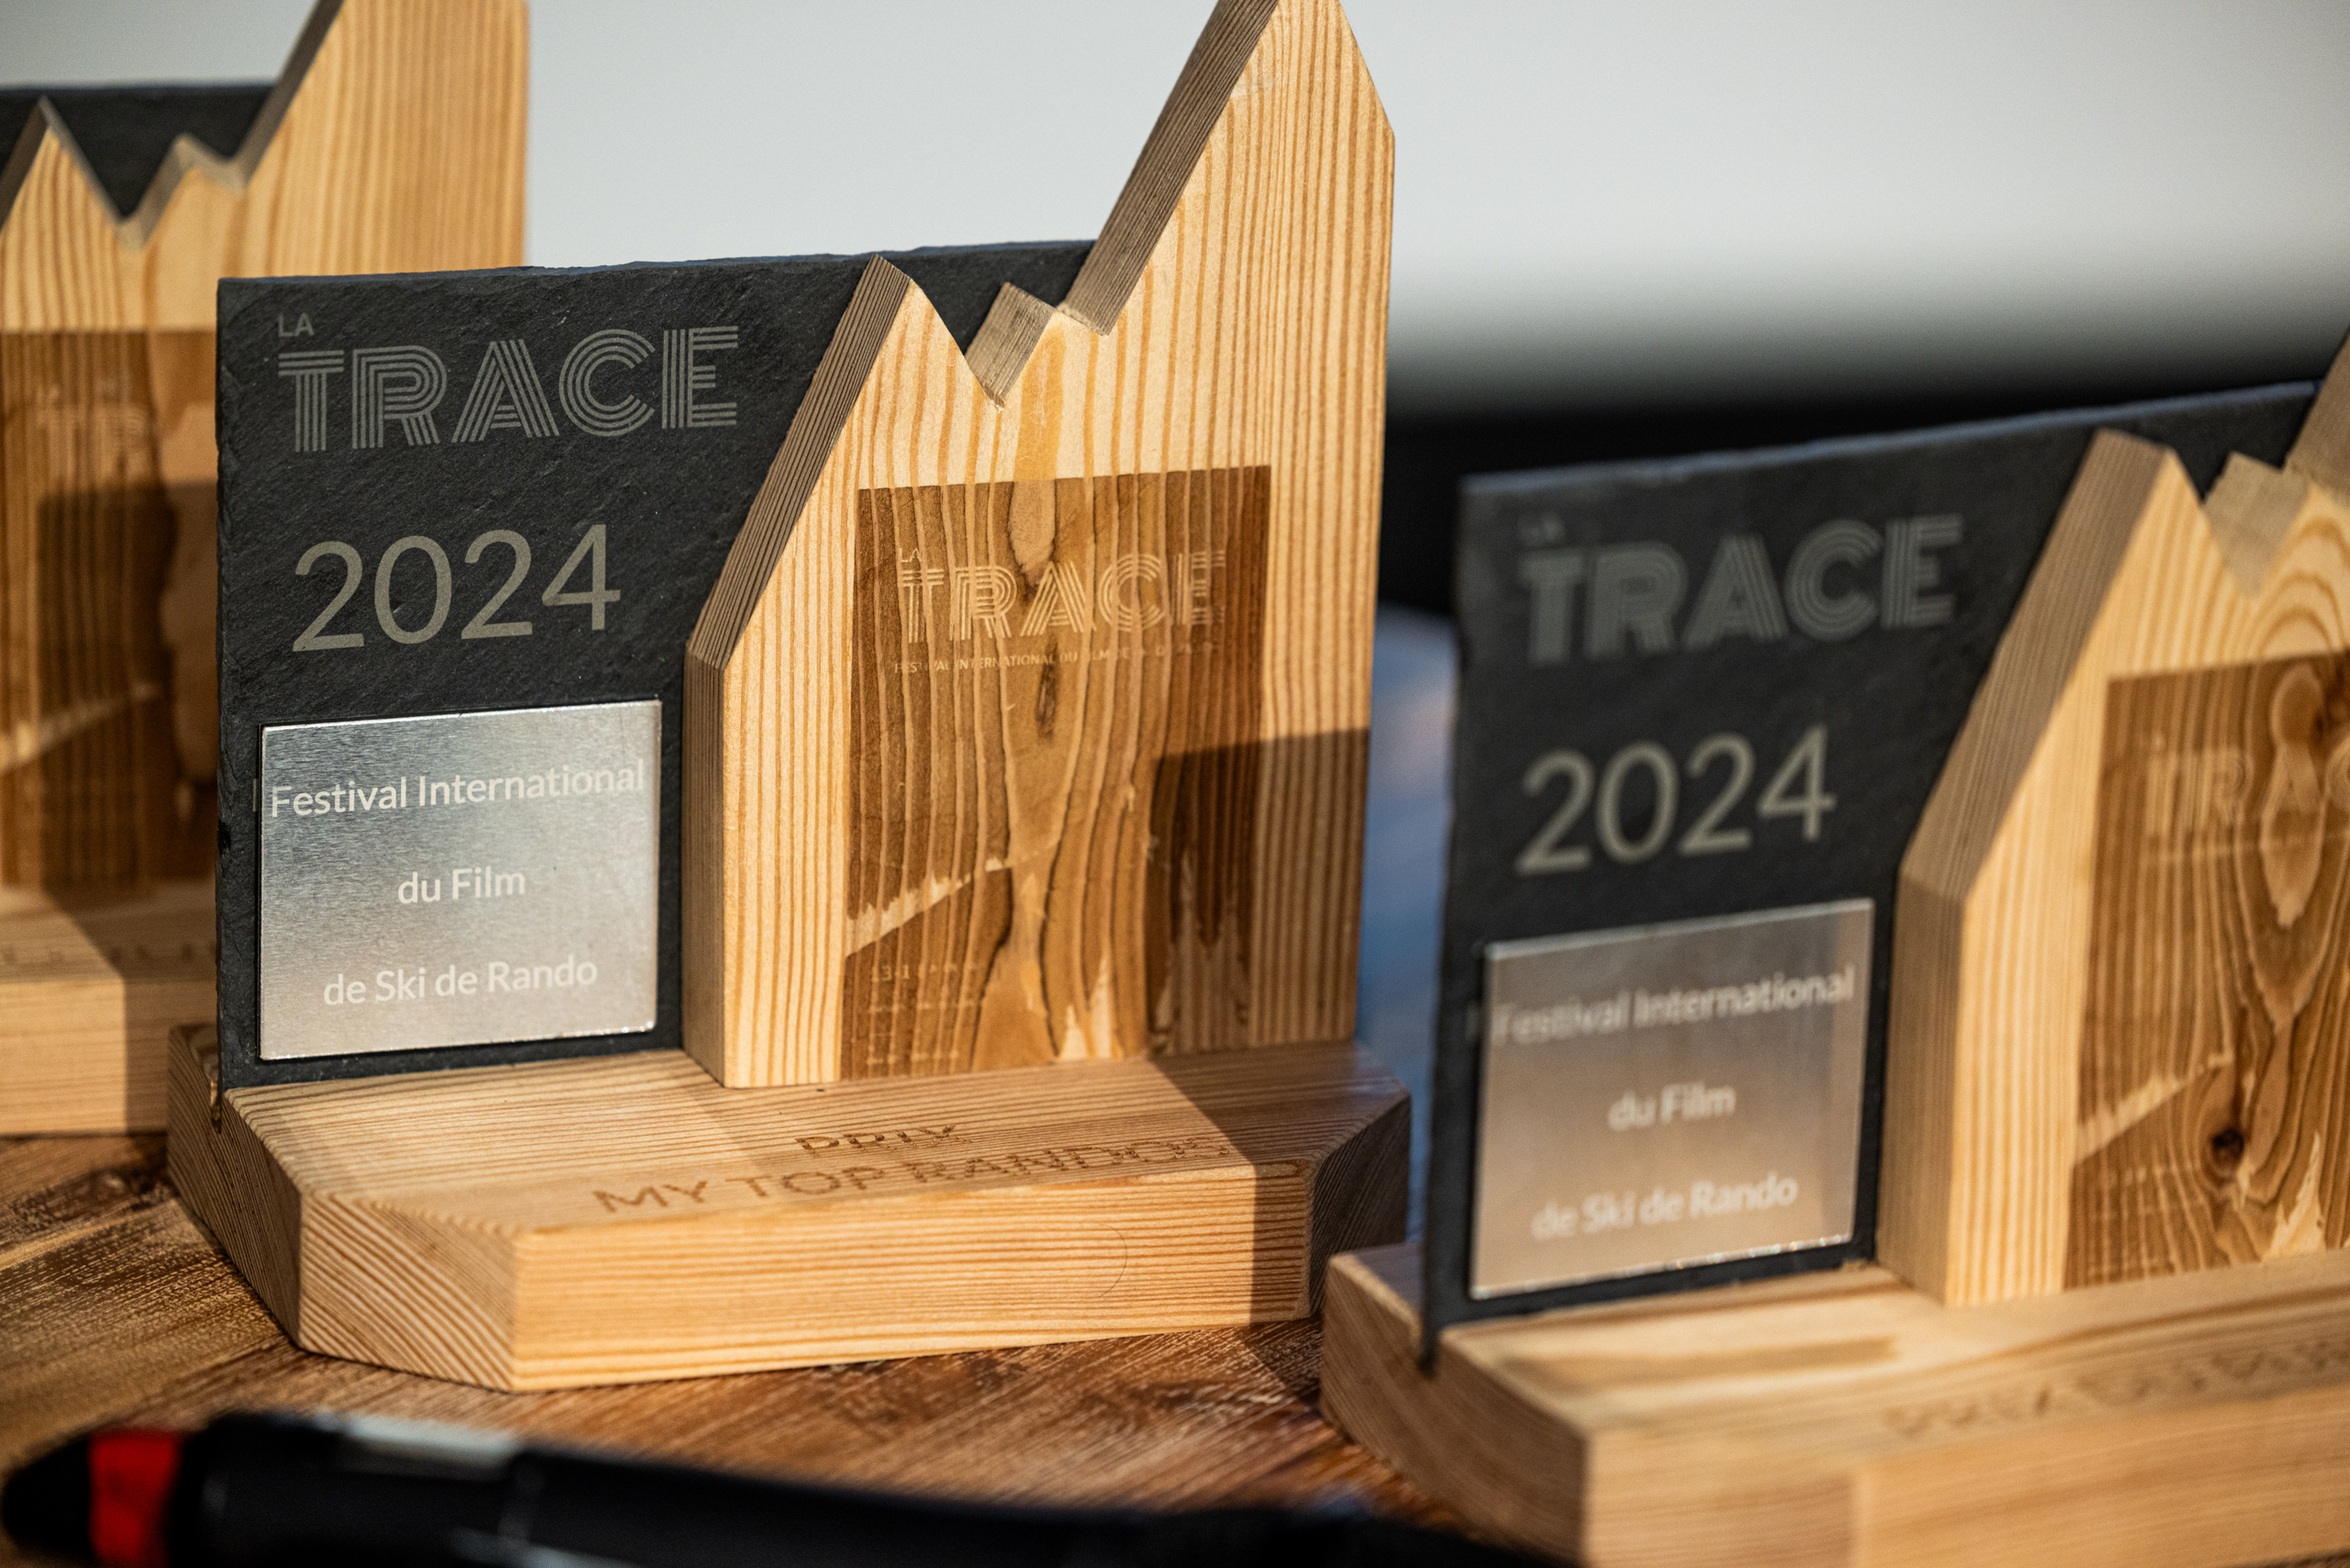 2 lauréats et un clap de fin pour La Trace 2024 !